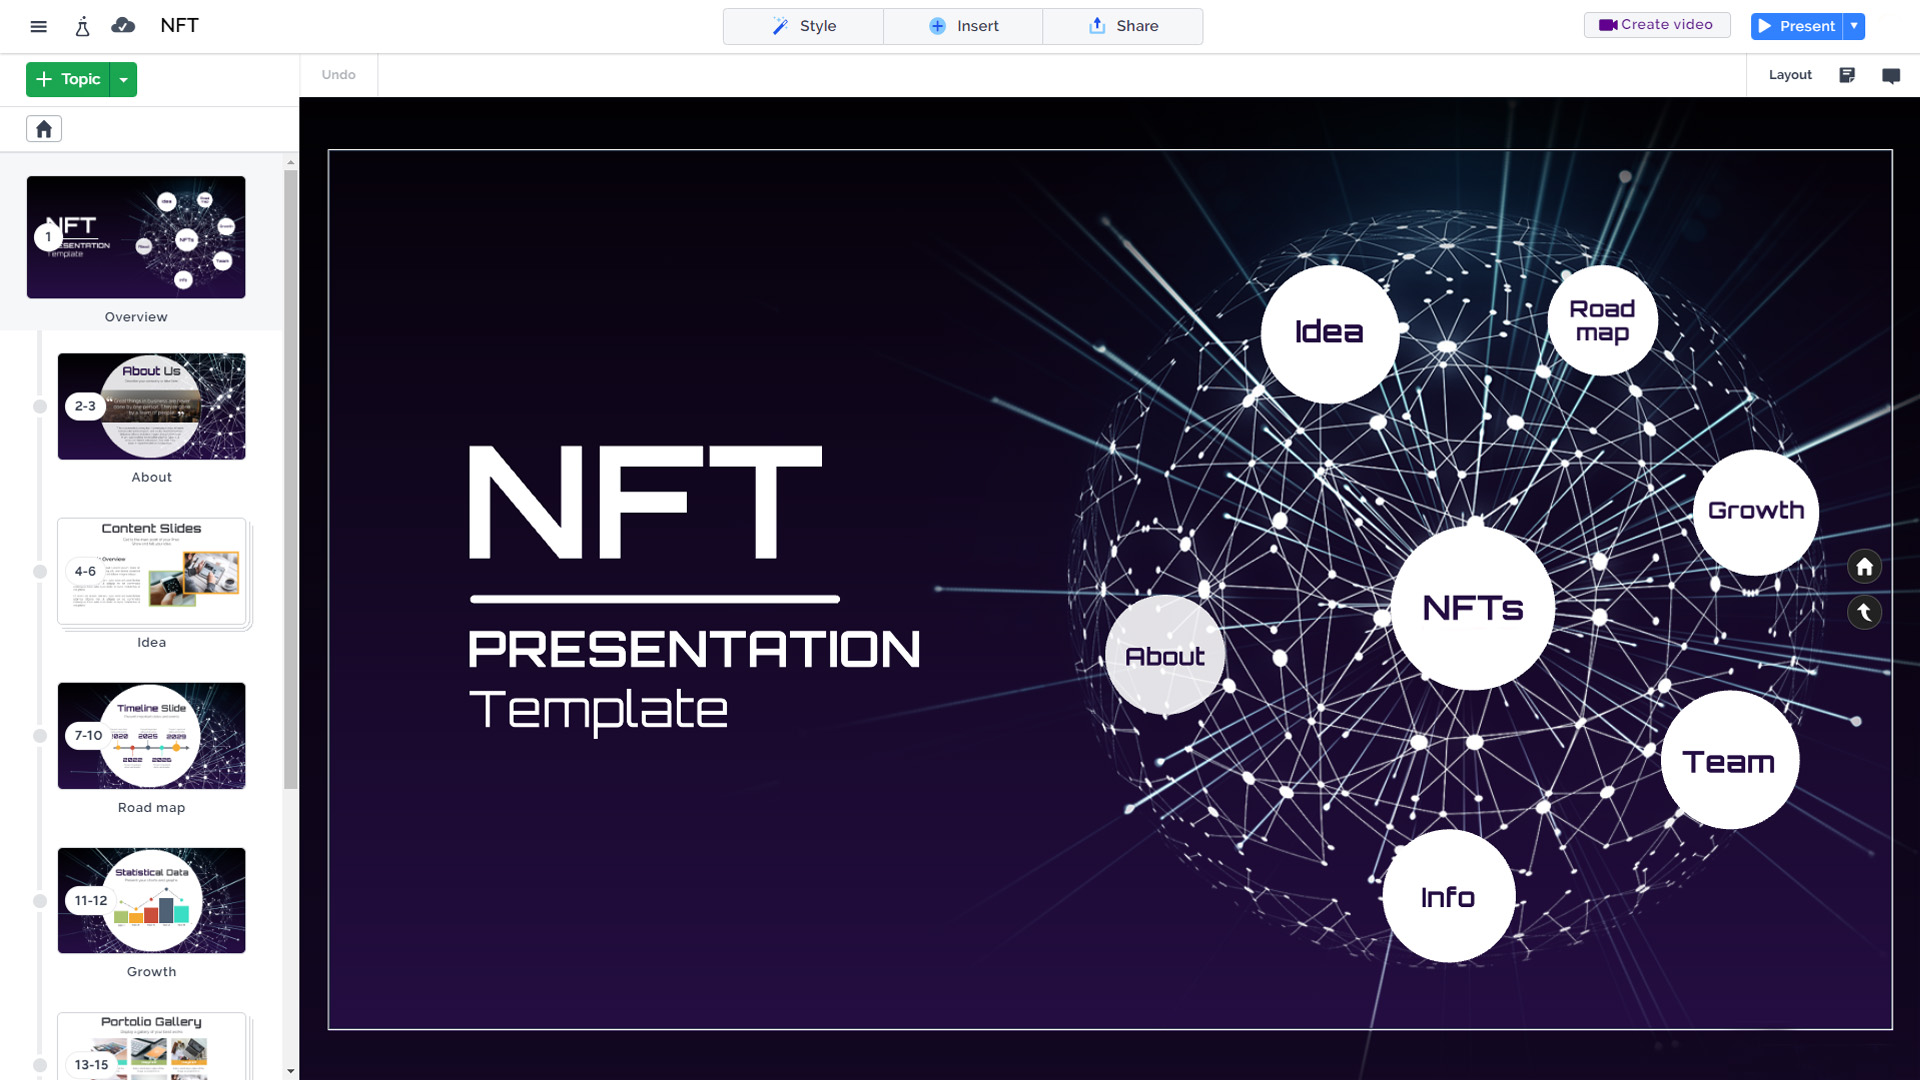 prezi-presentation-template-NFT-blockchain